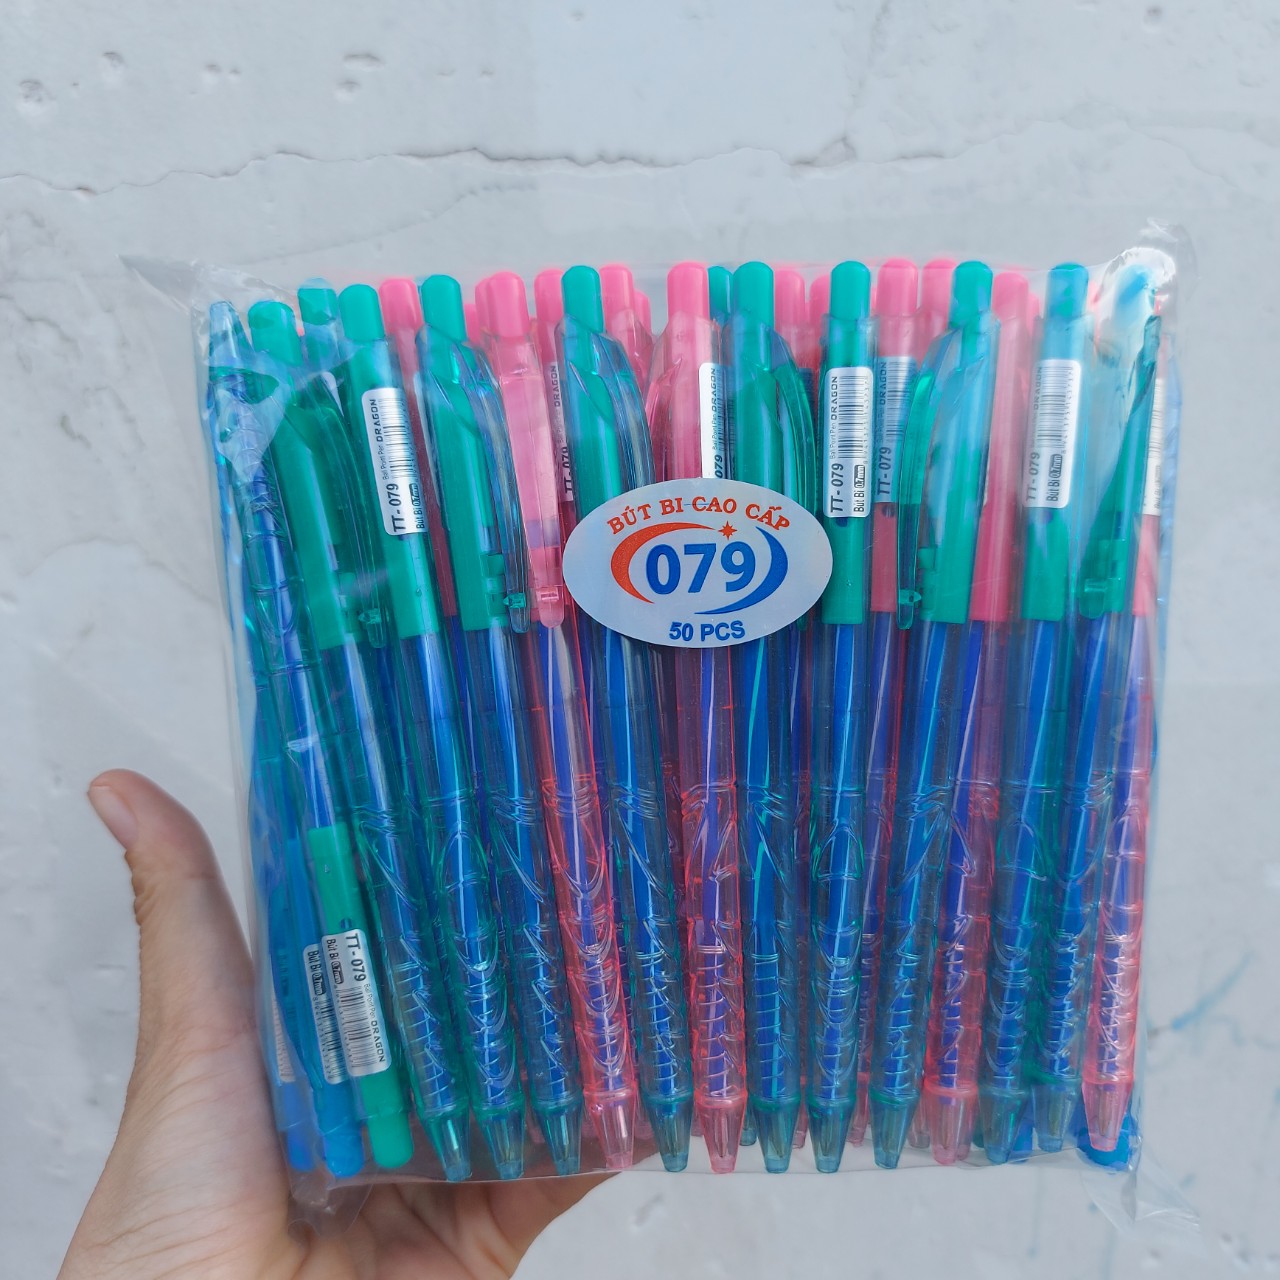 Set 100 Cây bút bi cao cấp mực xanh 079 ngòi 0.7mm